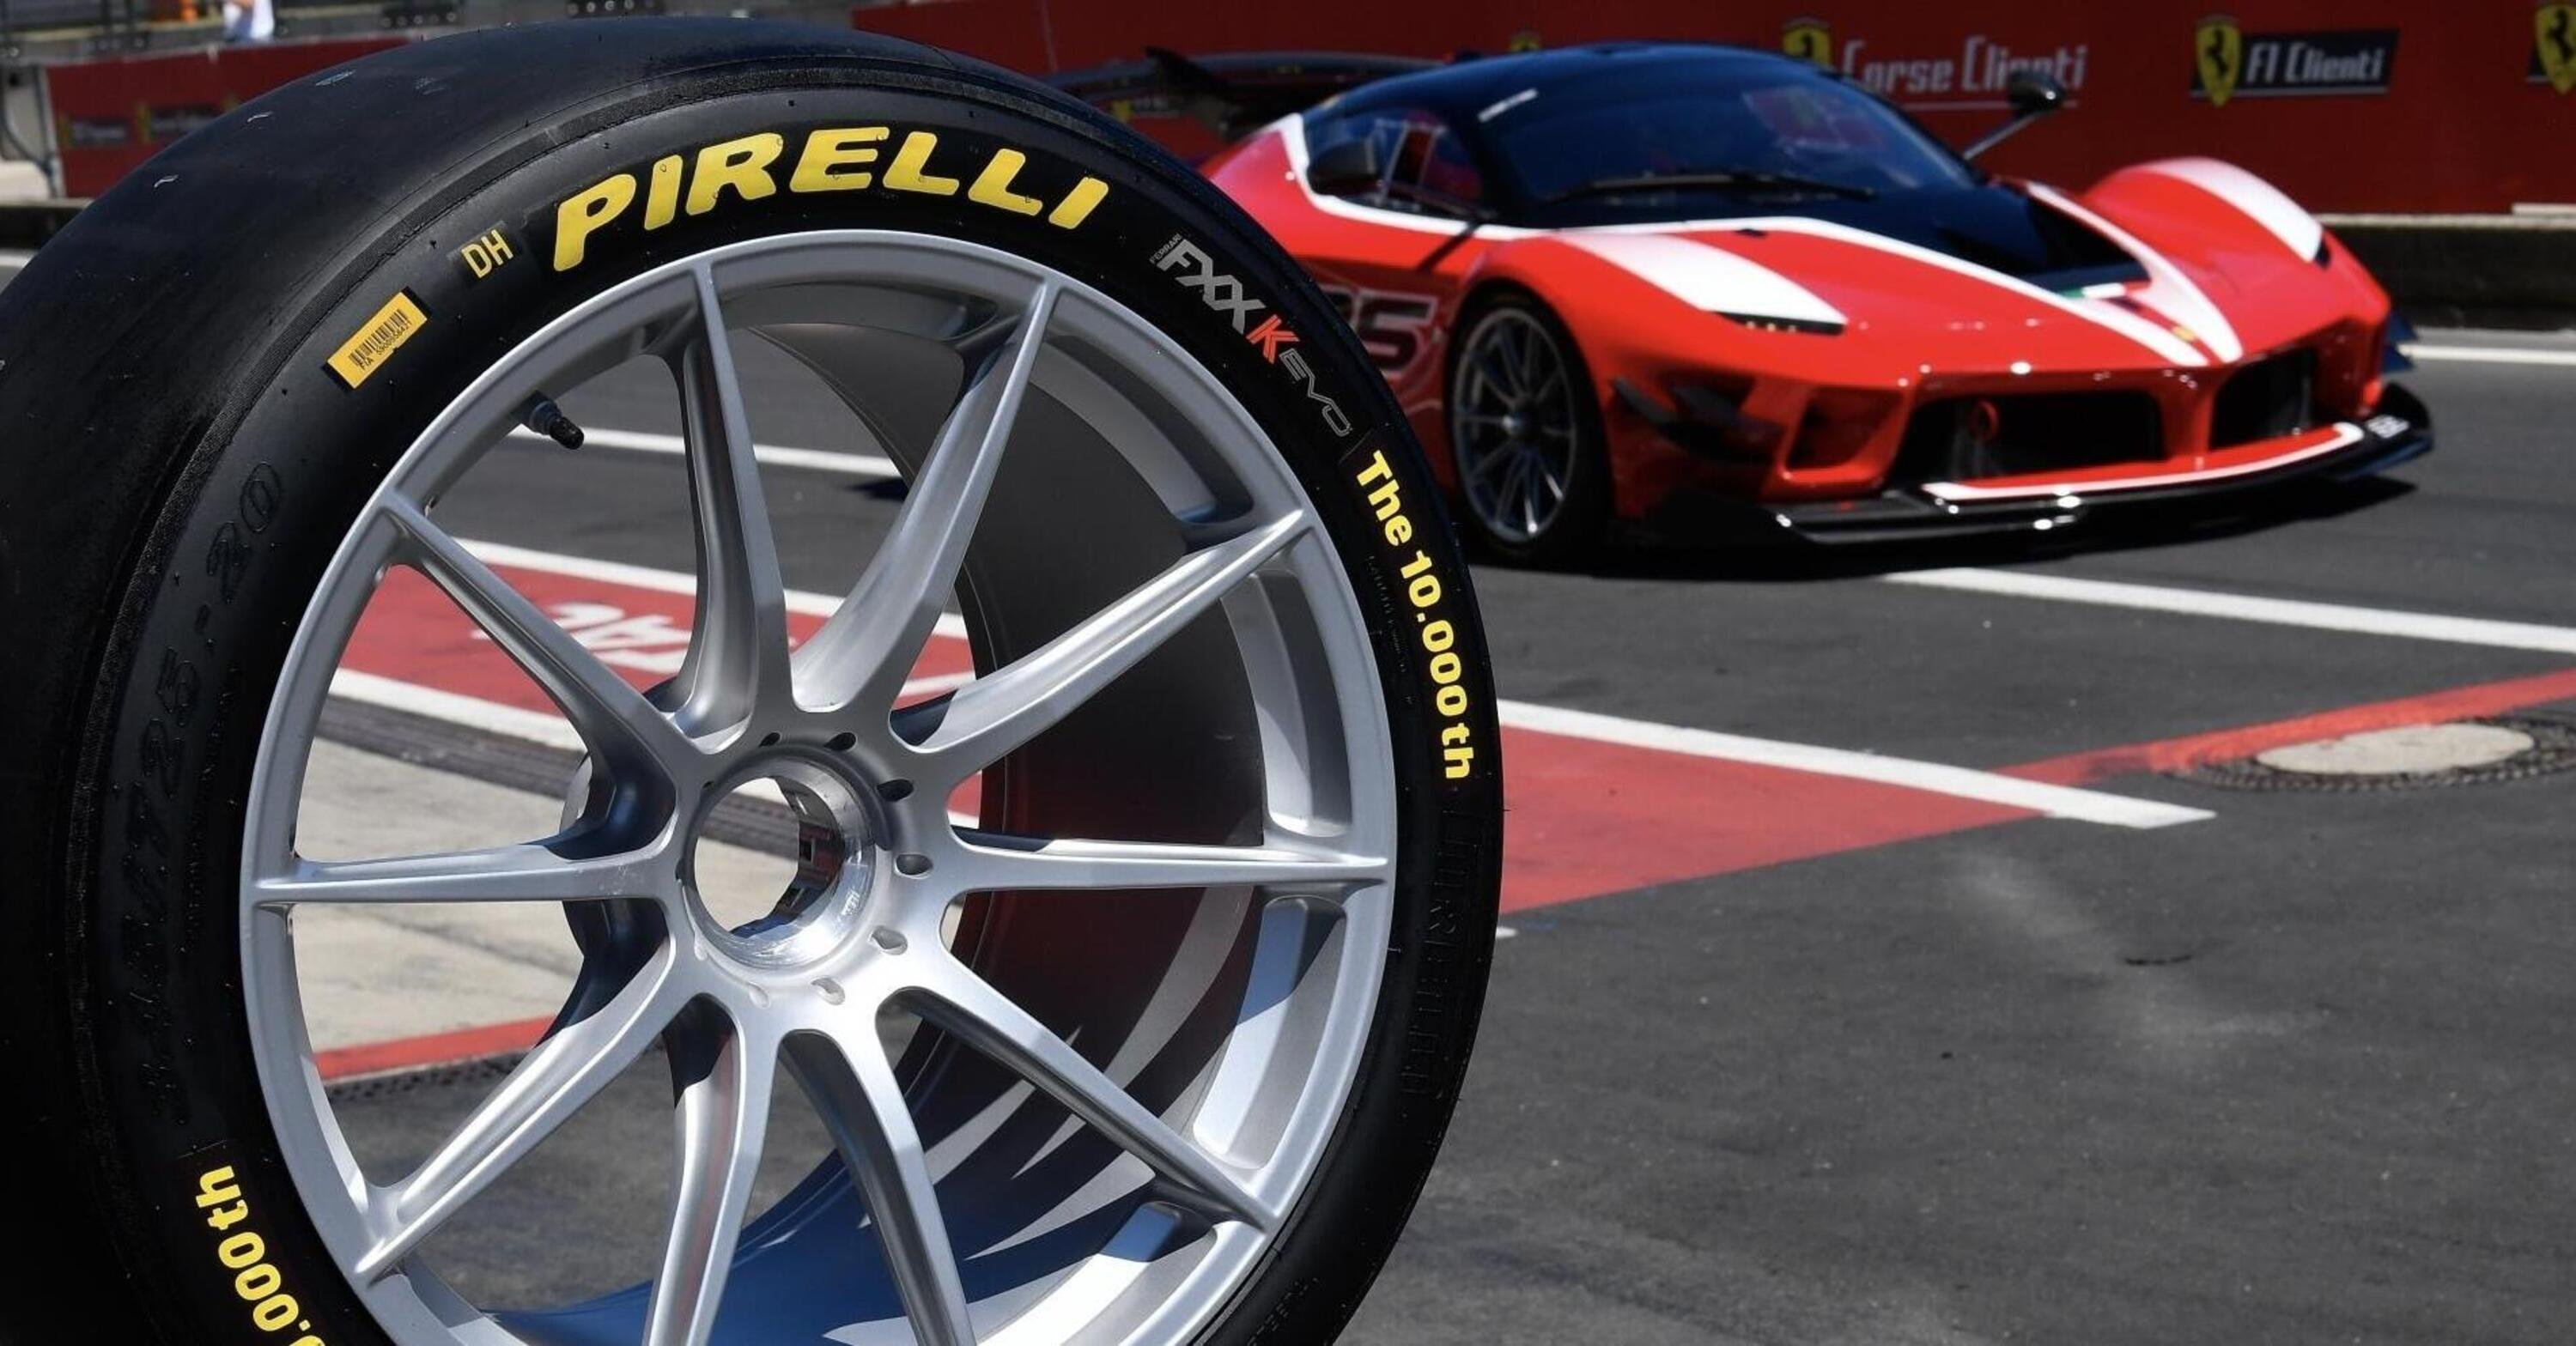 Ferrari e Pirelli: in cima alla classifica tra le 100 migliori aziende del mondo